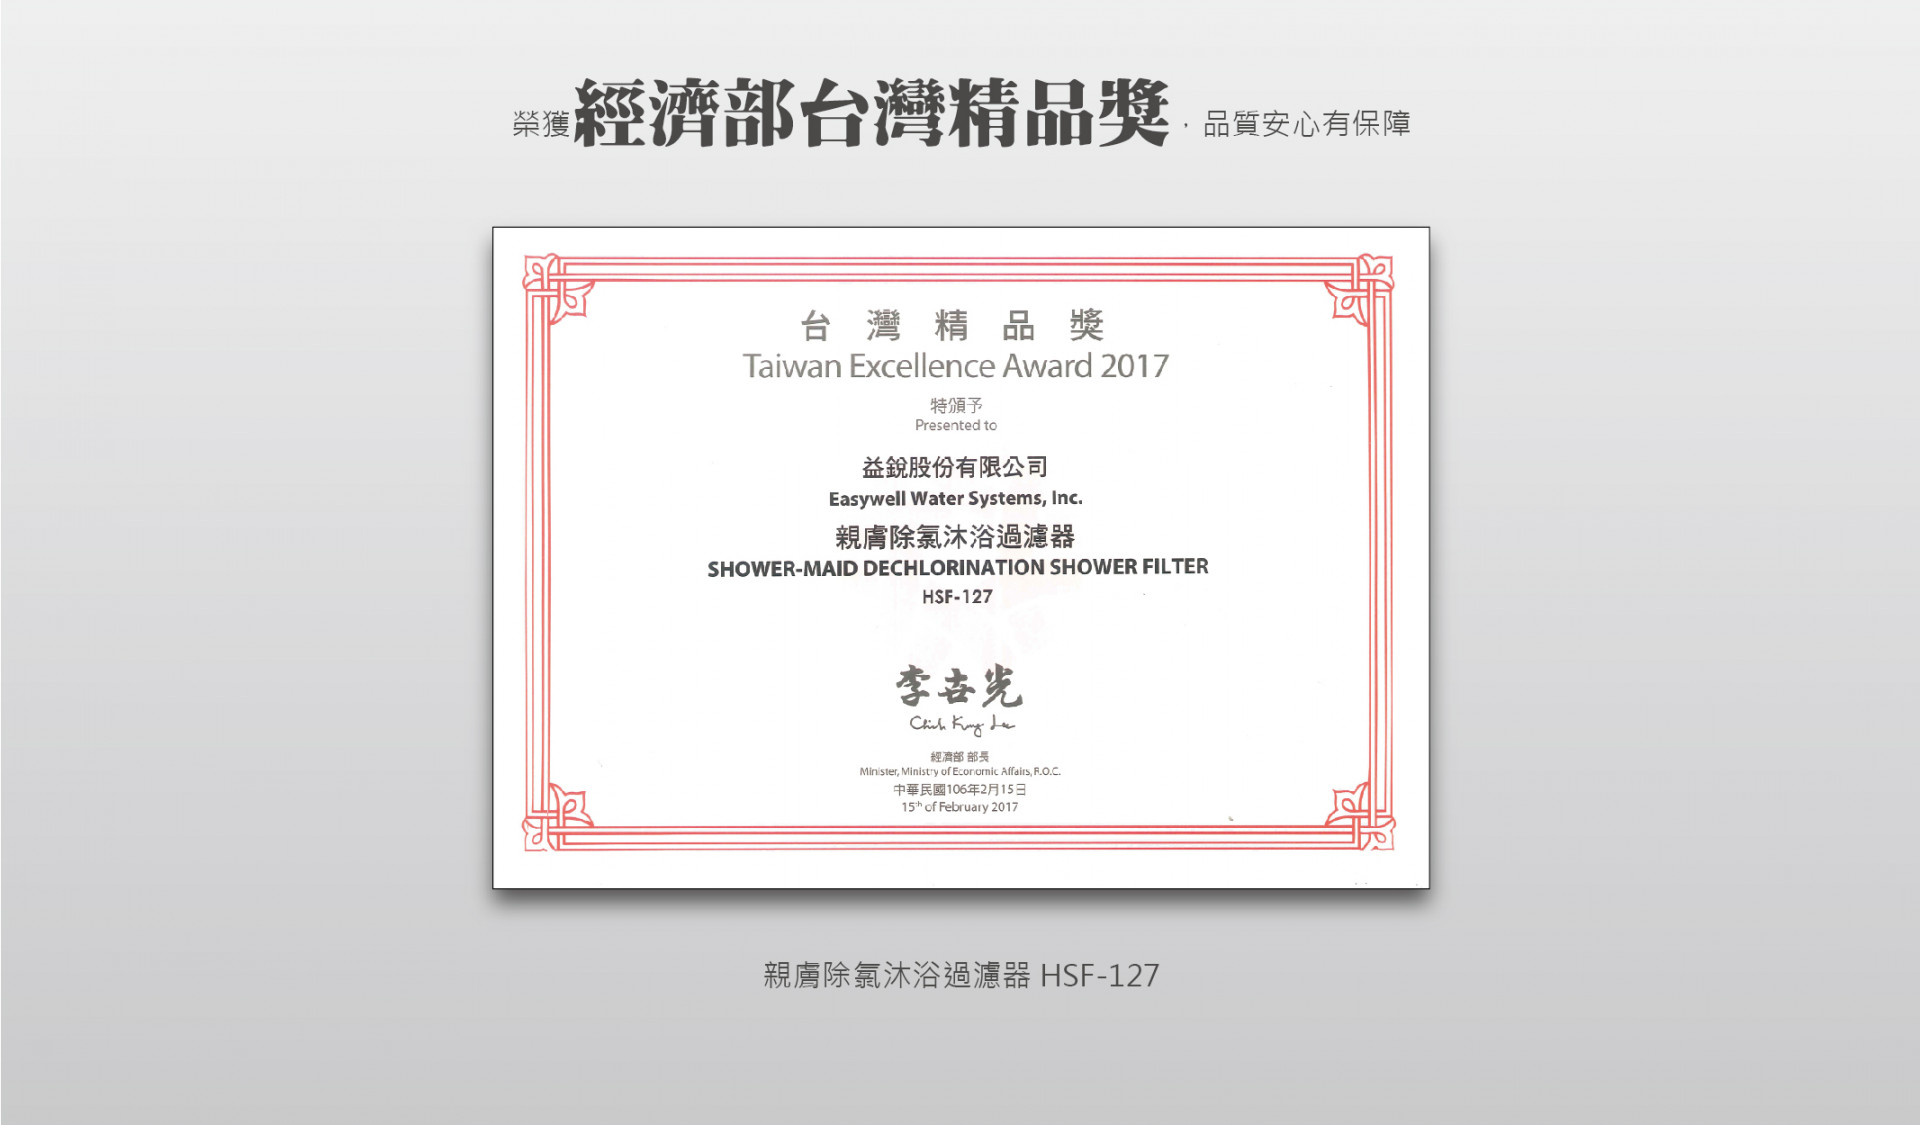 沐浴淨水器經濟部台灣精品獎